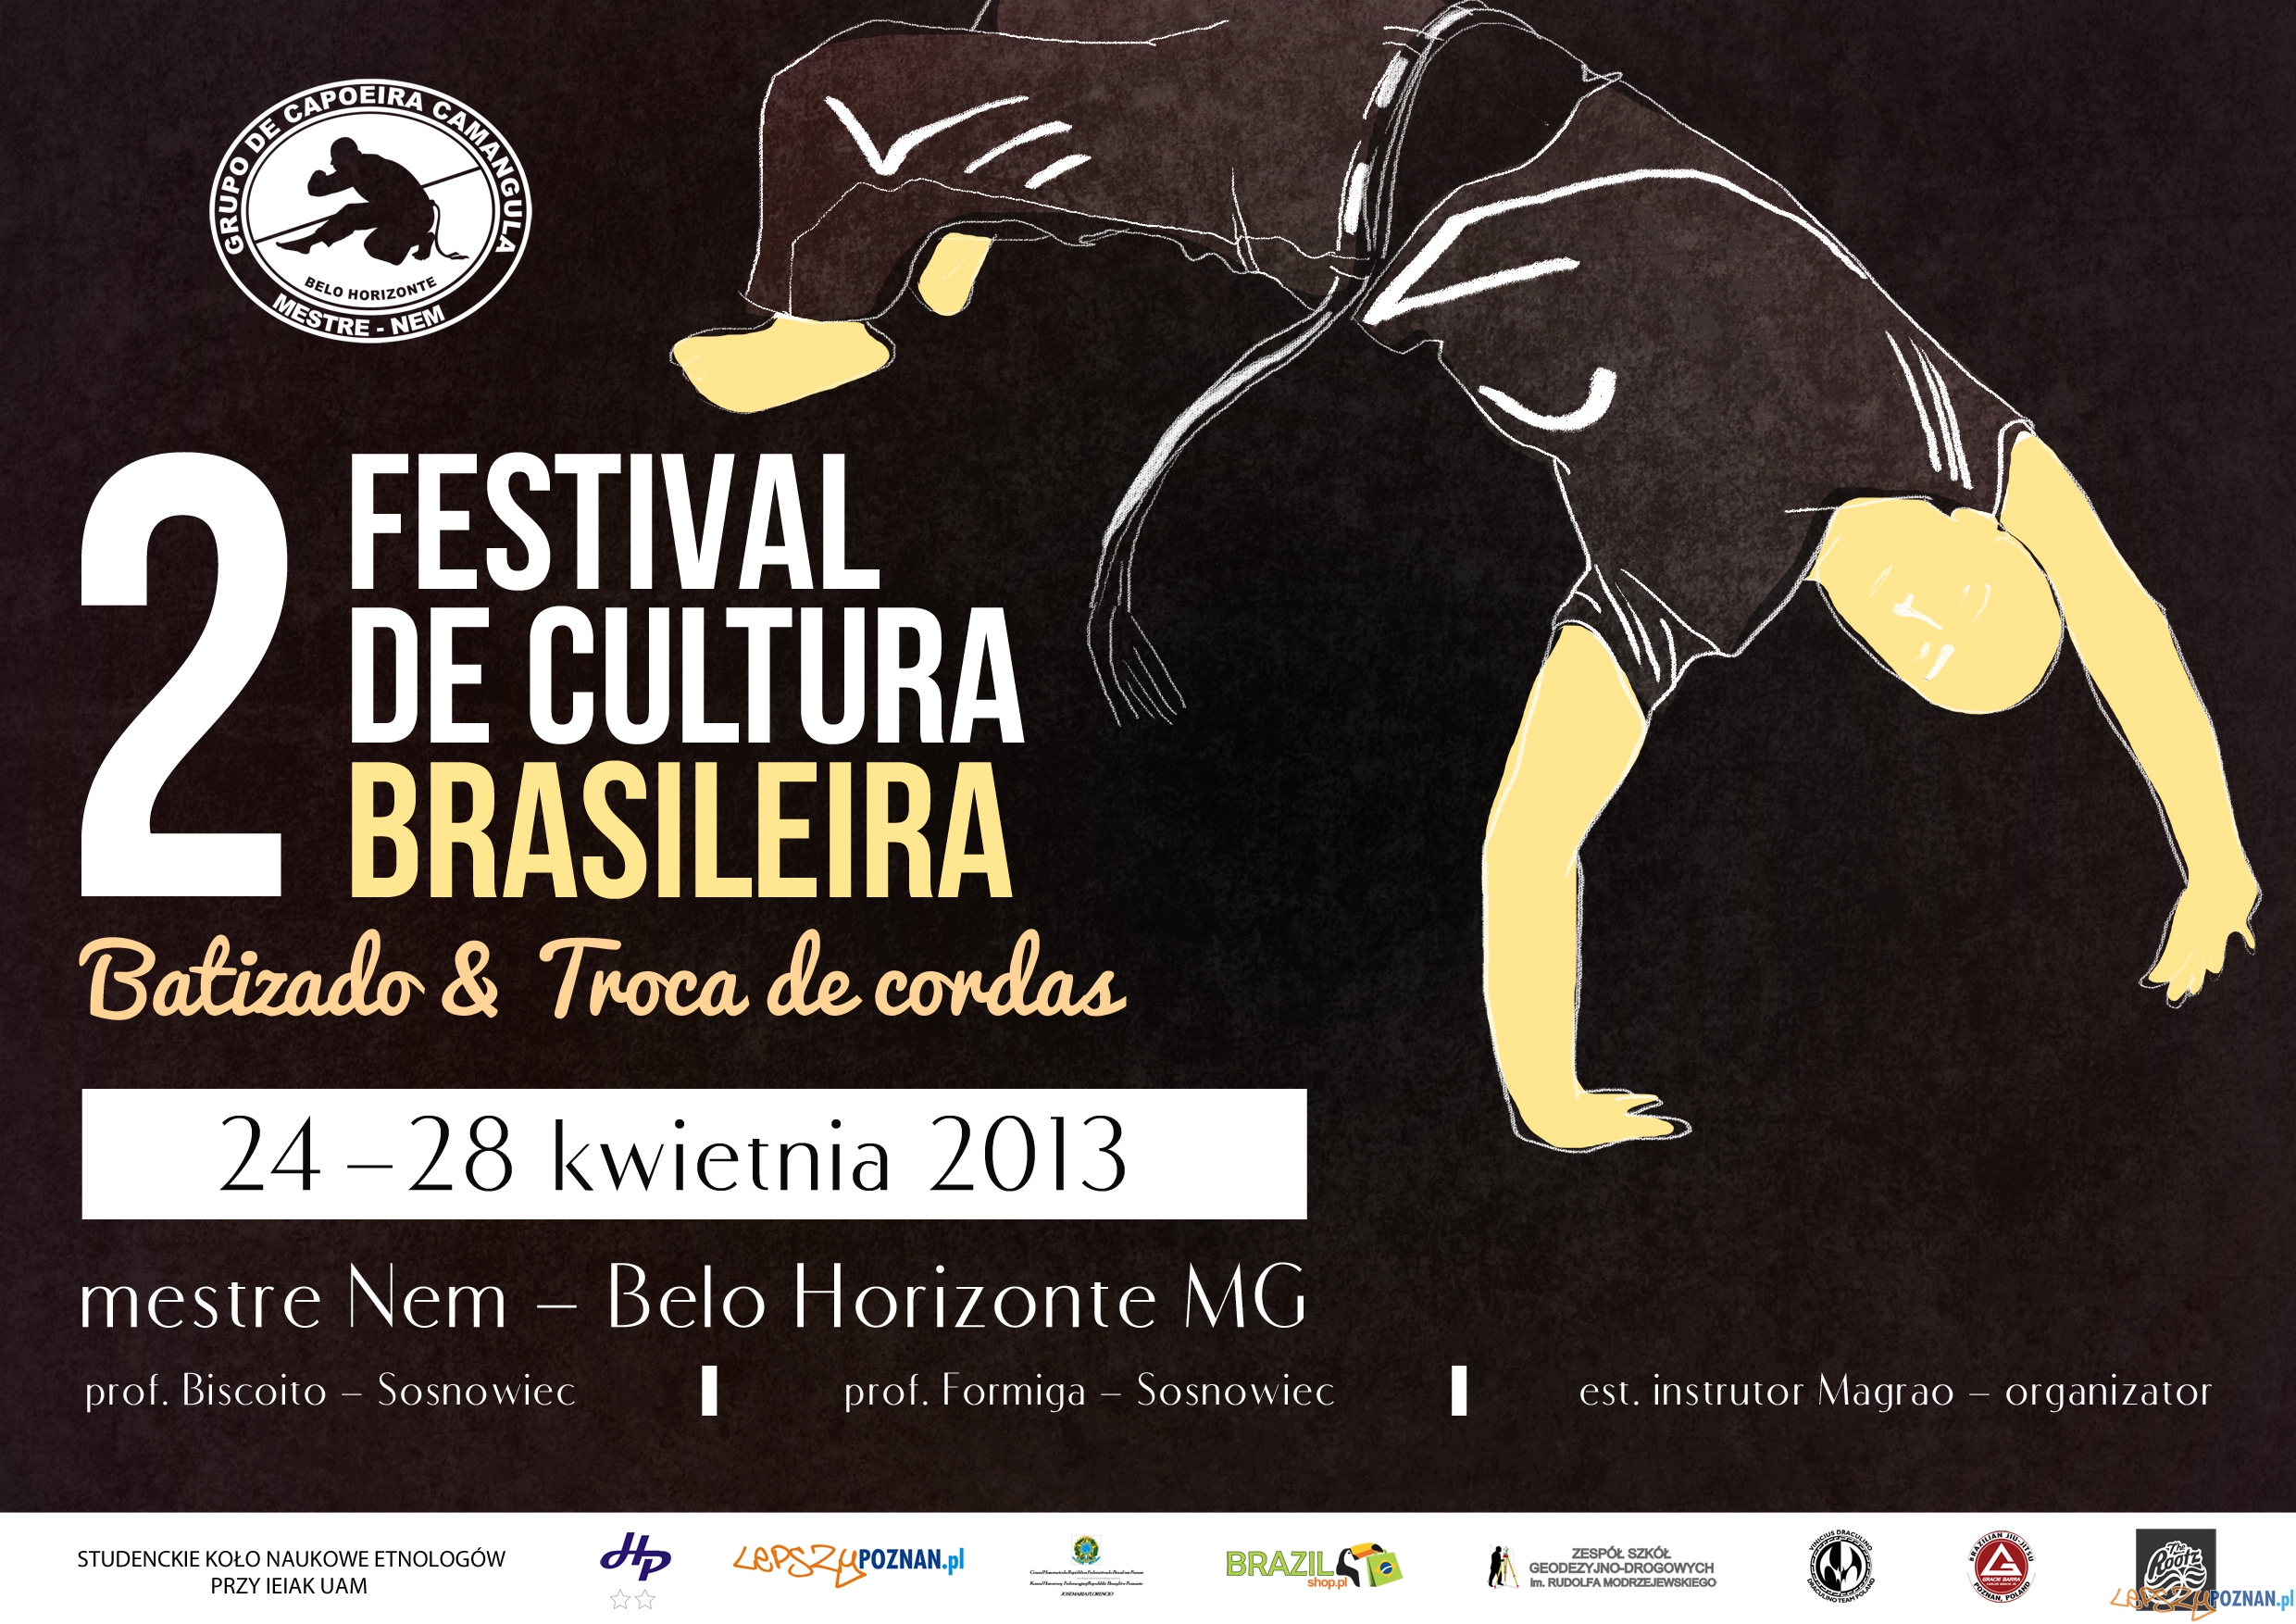 Festival de Cultura Brasileira  Foto: Festival de Cultura Brasileira